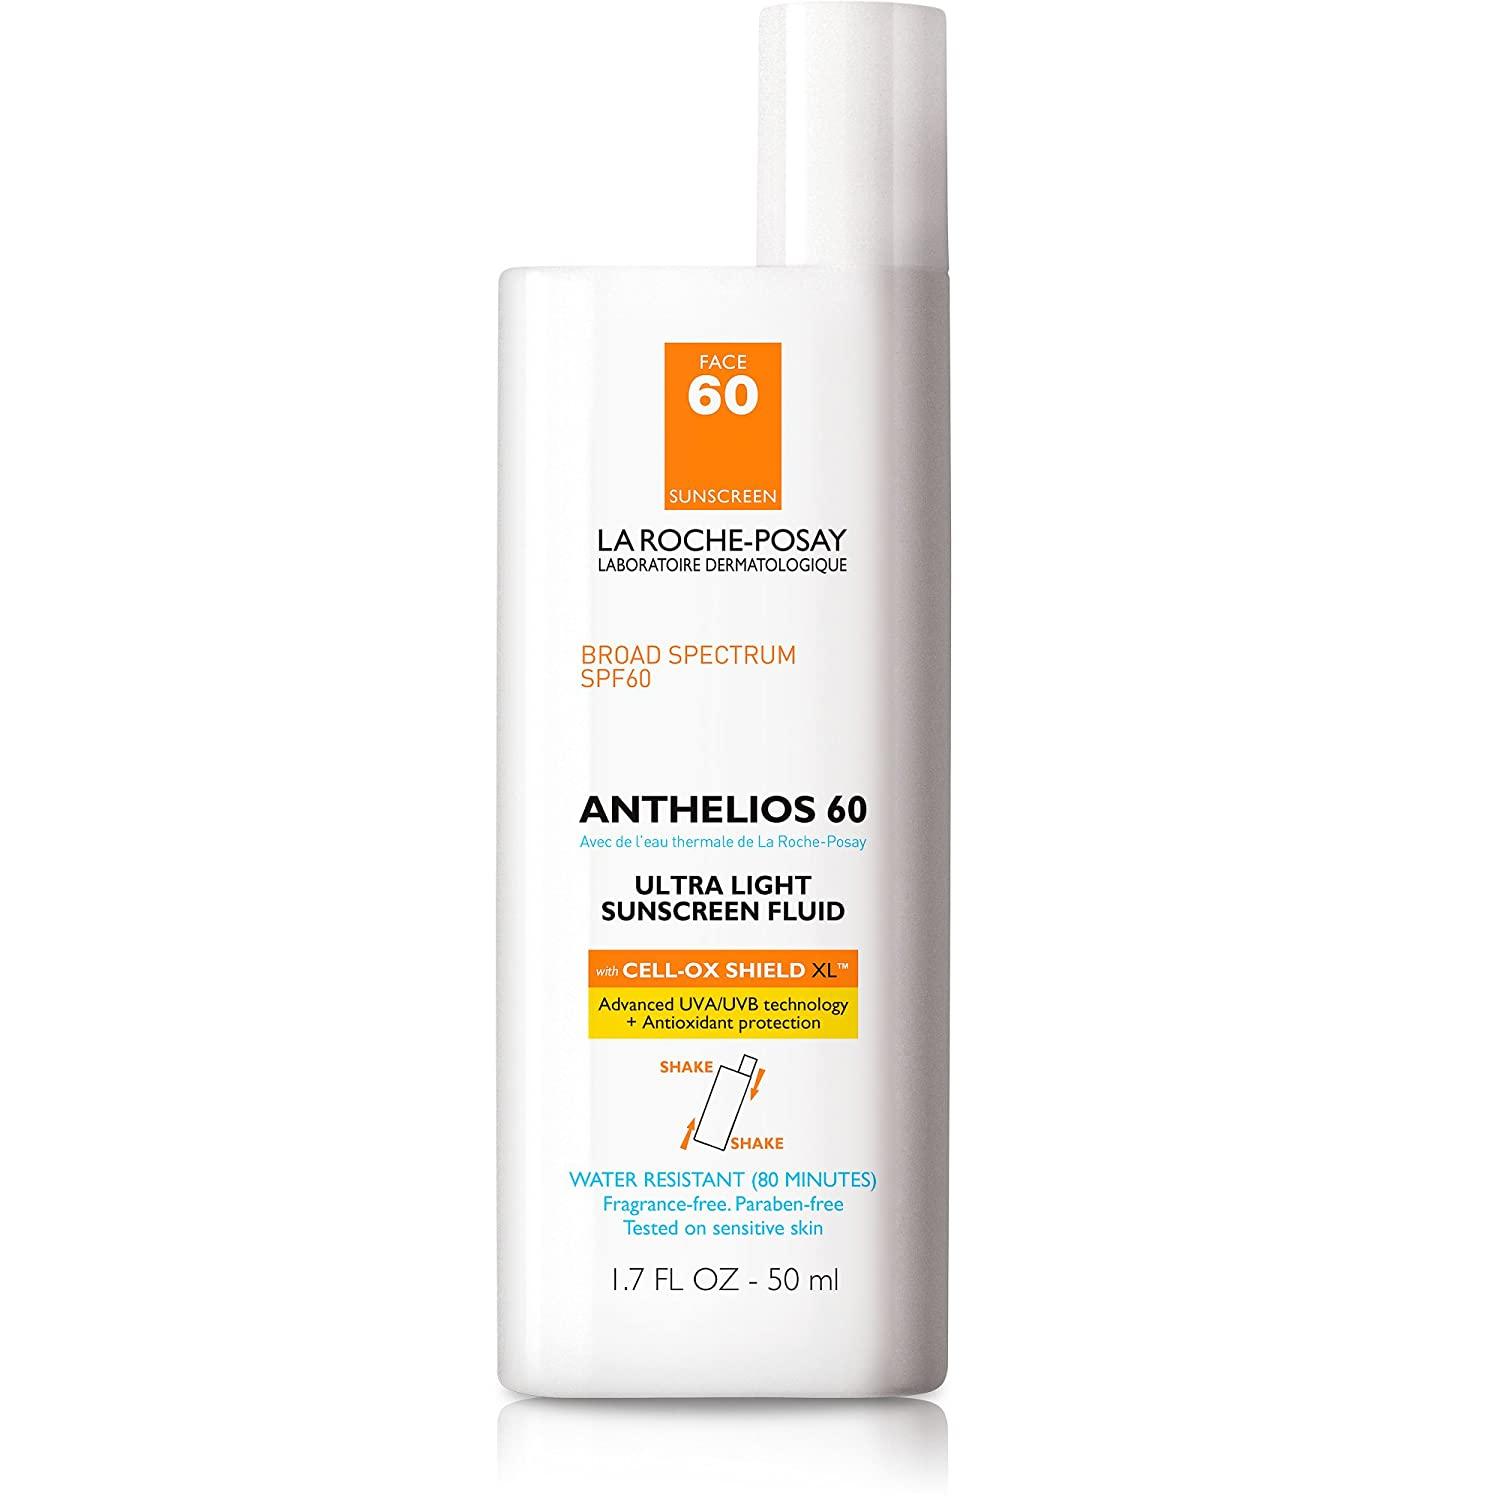 Anthelios 60 Ultra Light Sunscreen Fluid